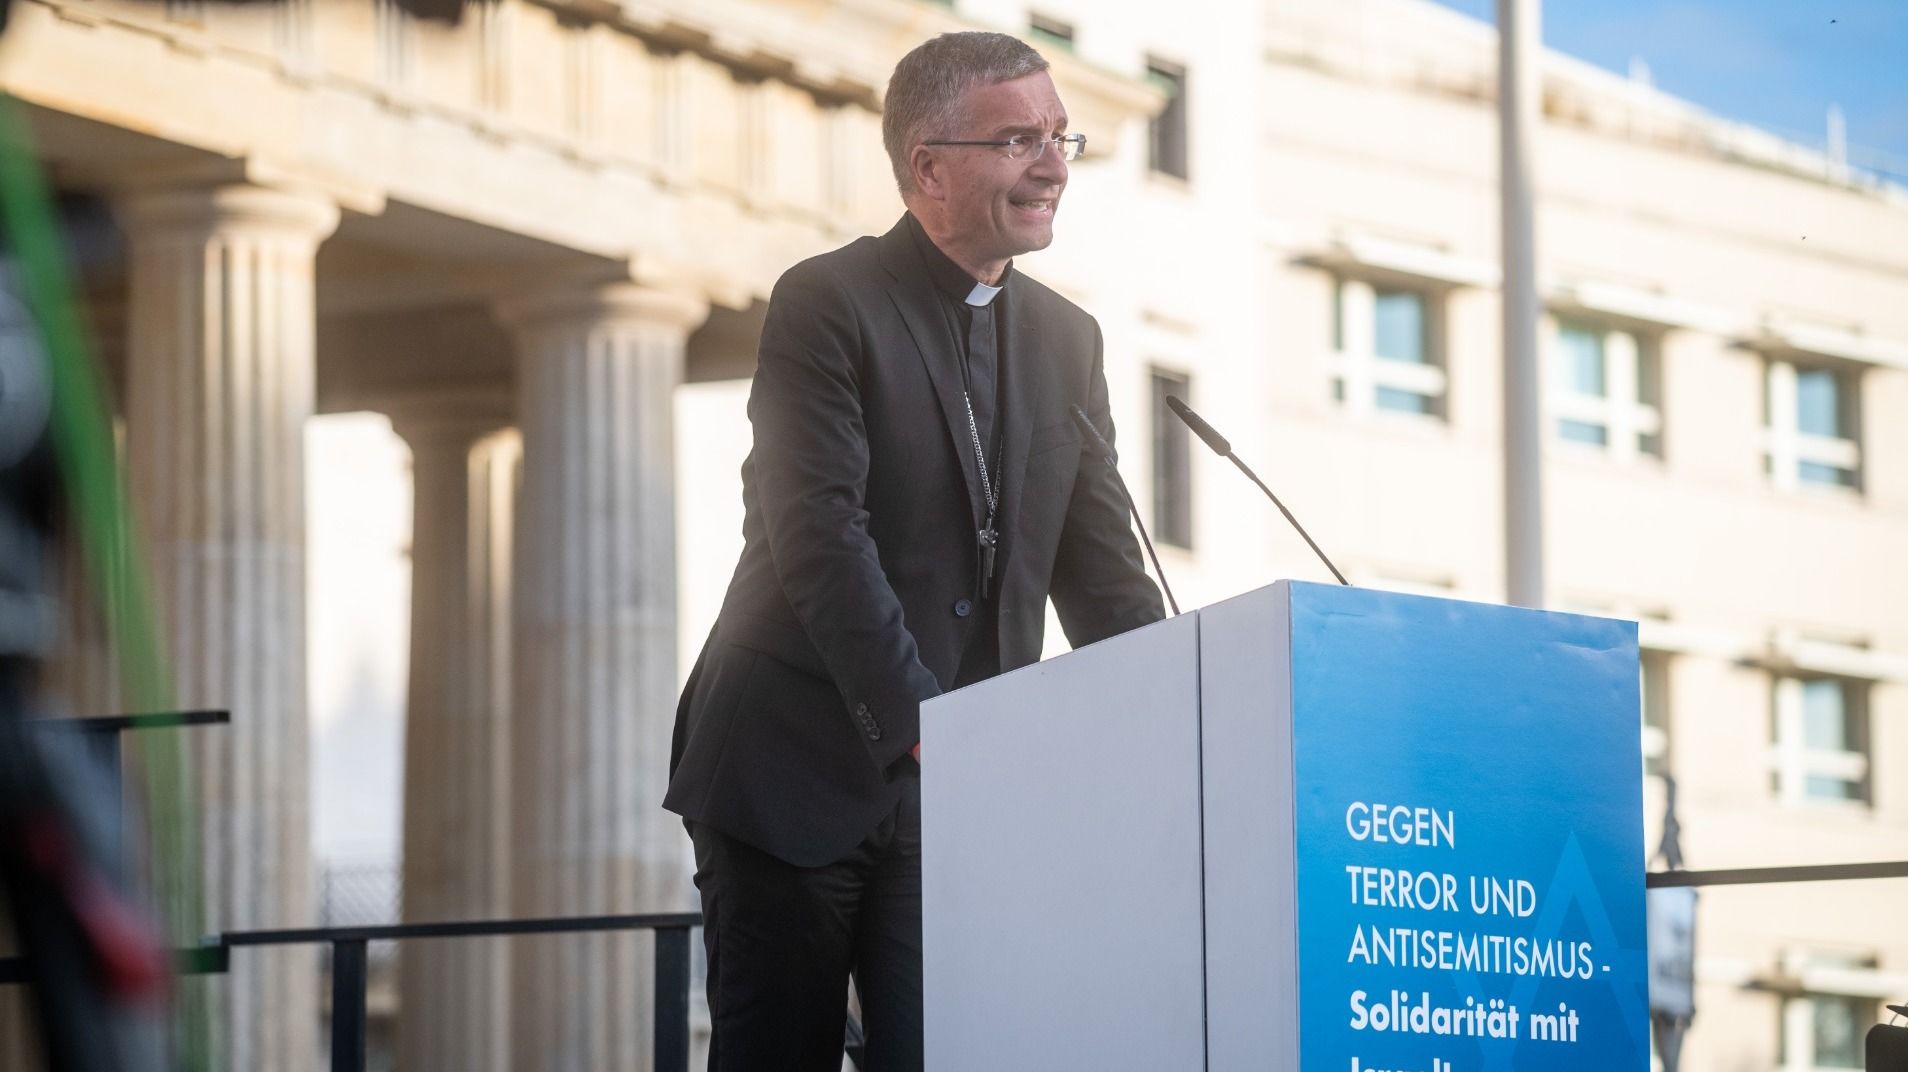 Fuldaer Bischof spricht bei Kundgebung in Berlin – für Solidarität und Mitgefühl mit Israel. Foto: DBK / Danny Schmidt / Campact 